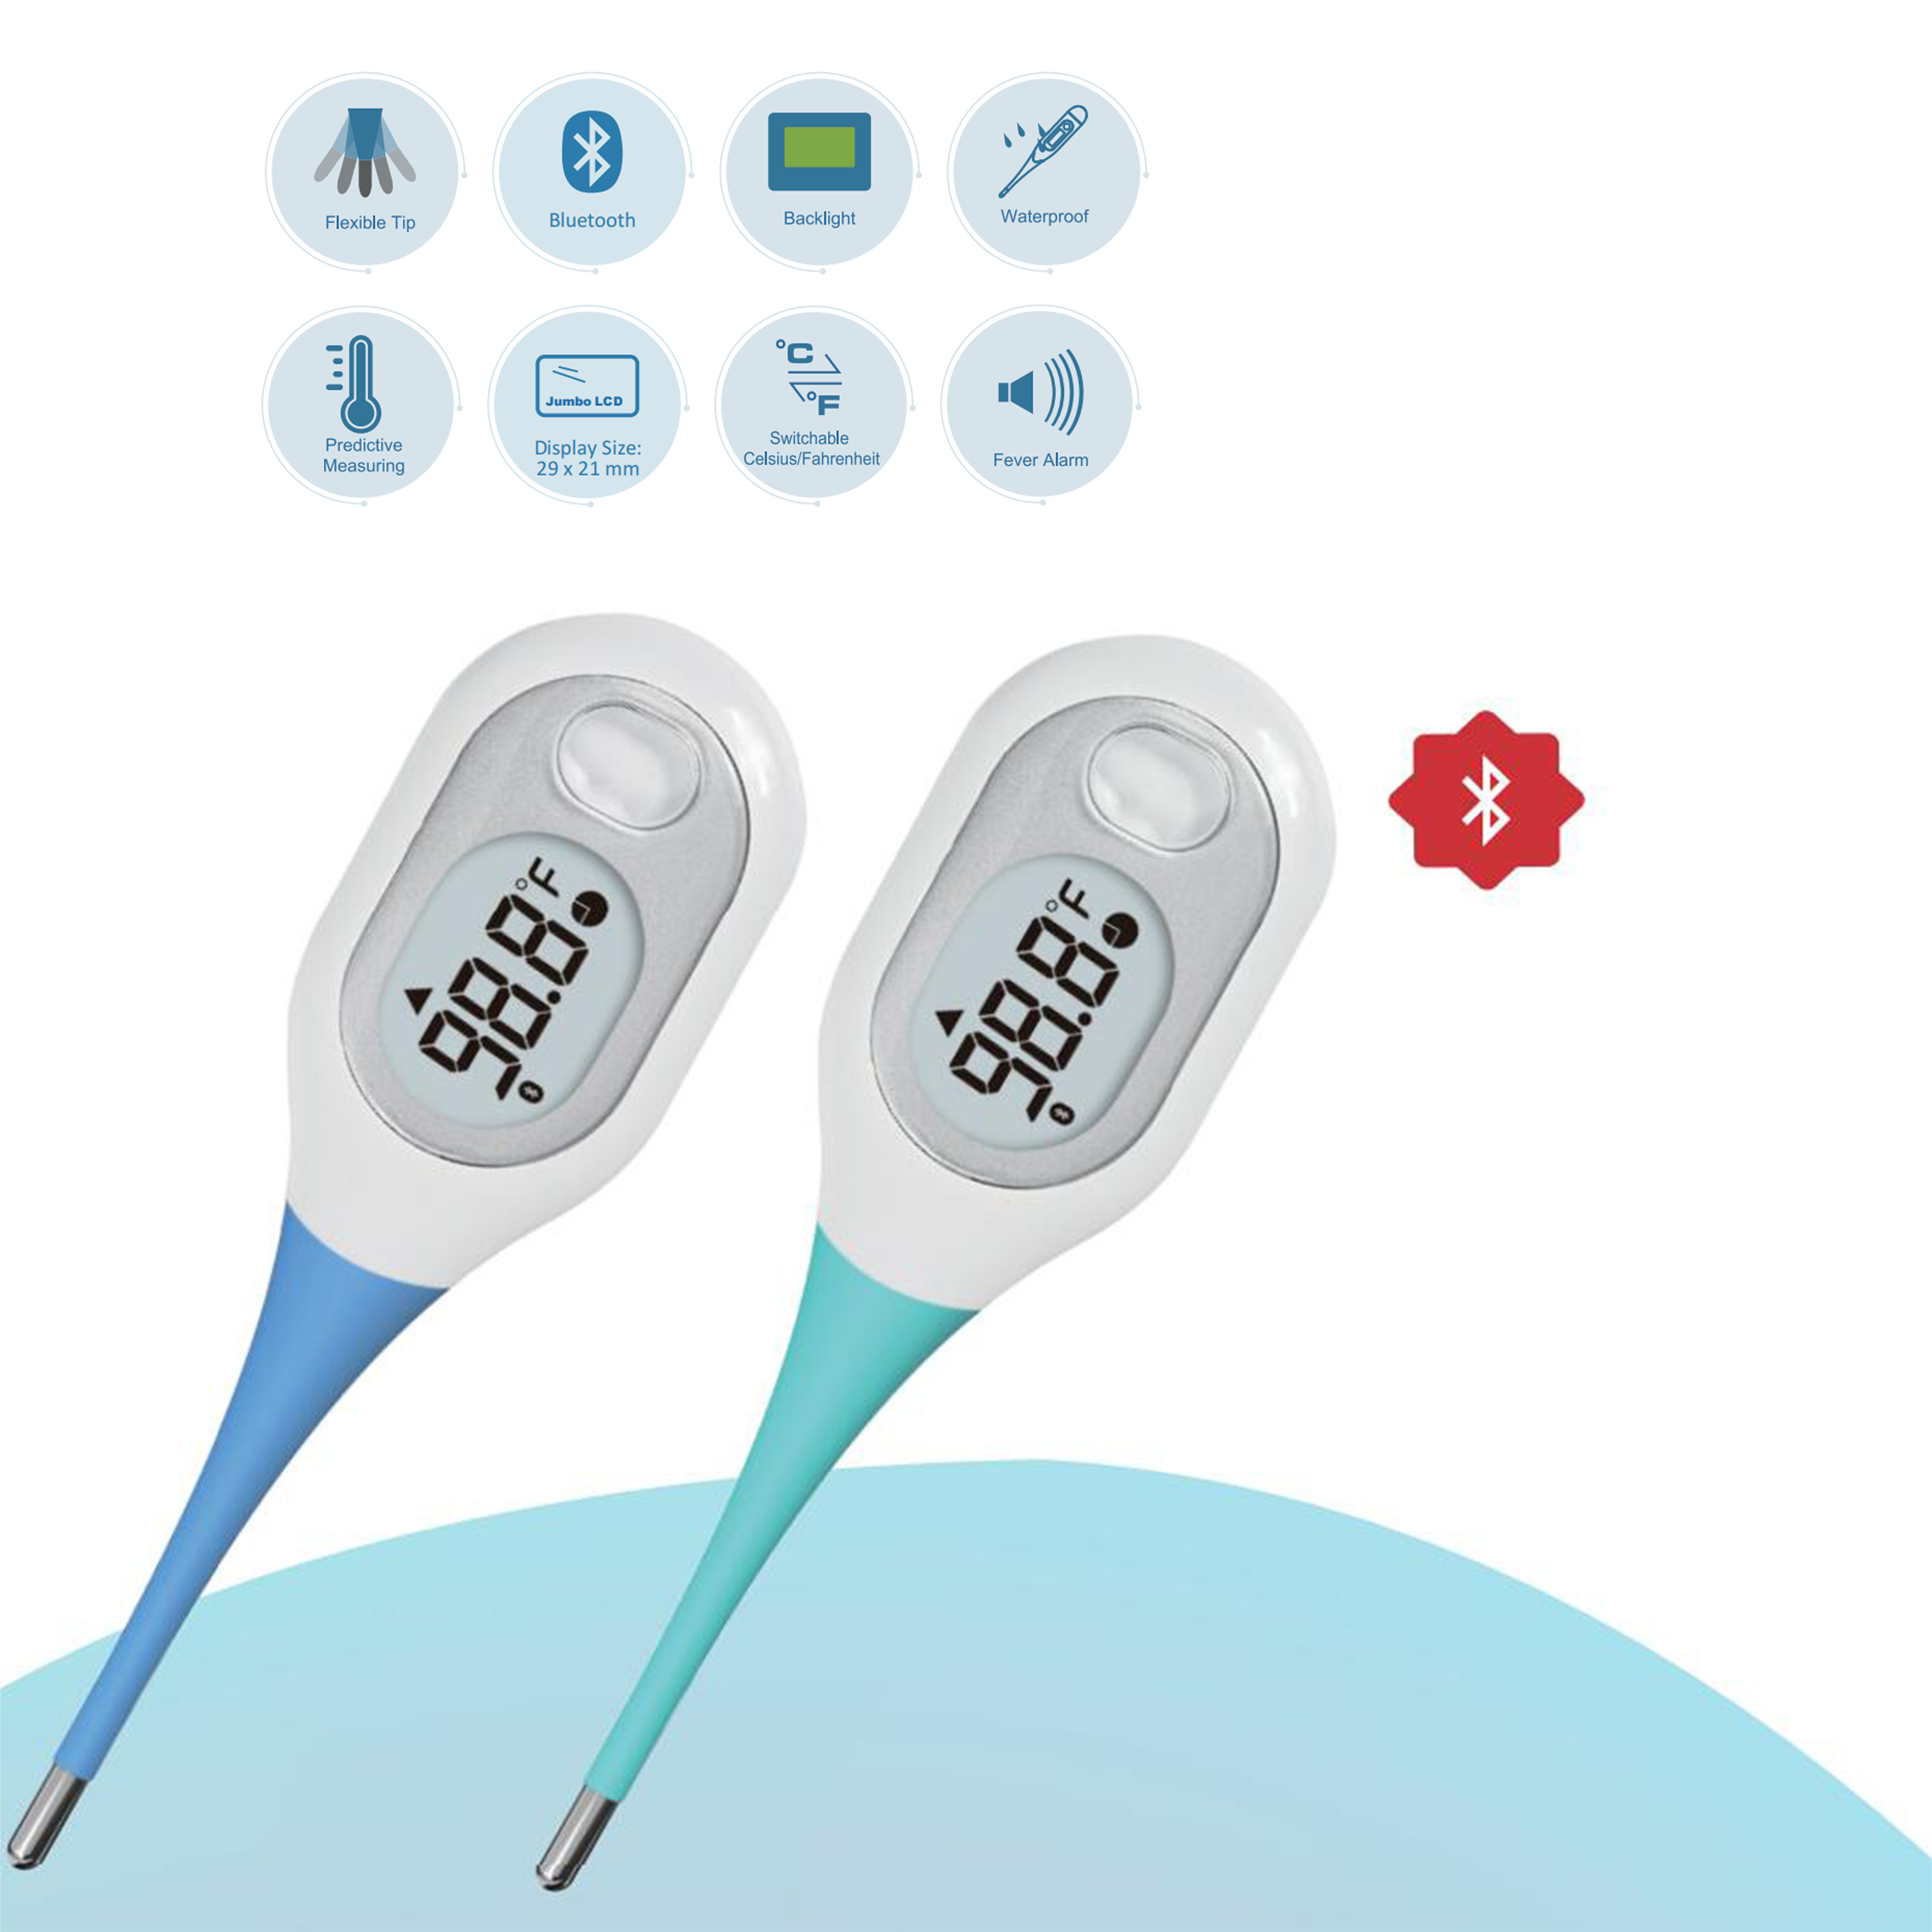 For å beskytte helsen, følger vårt elektroniske termometer deg